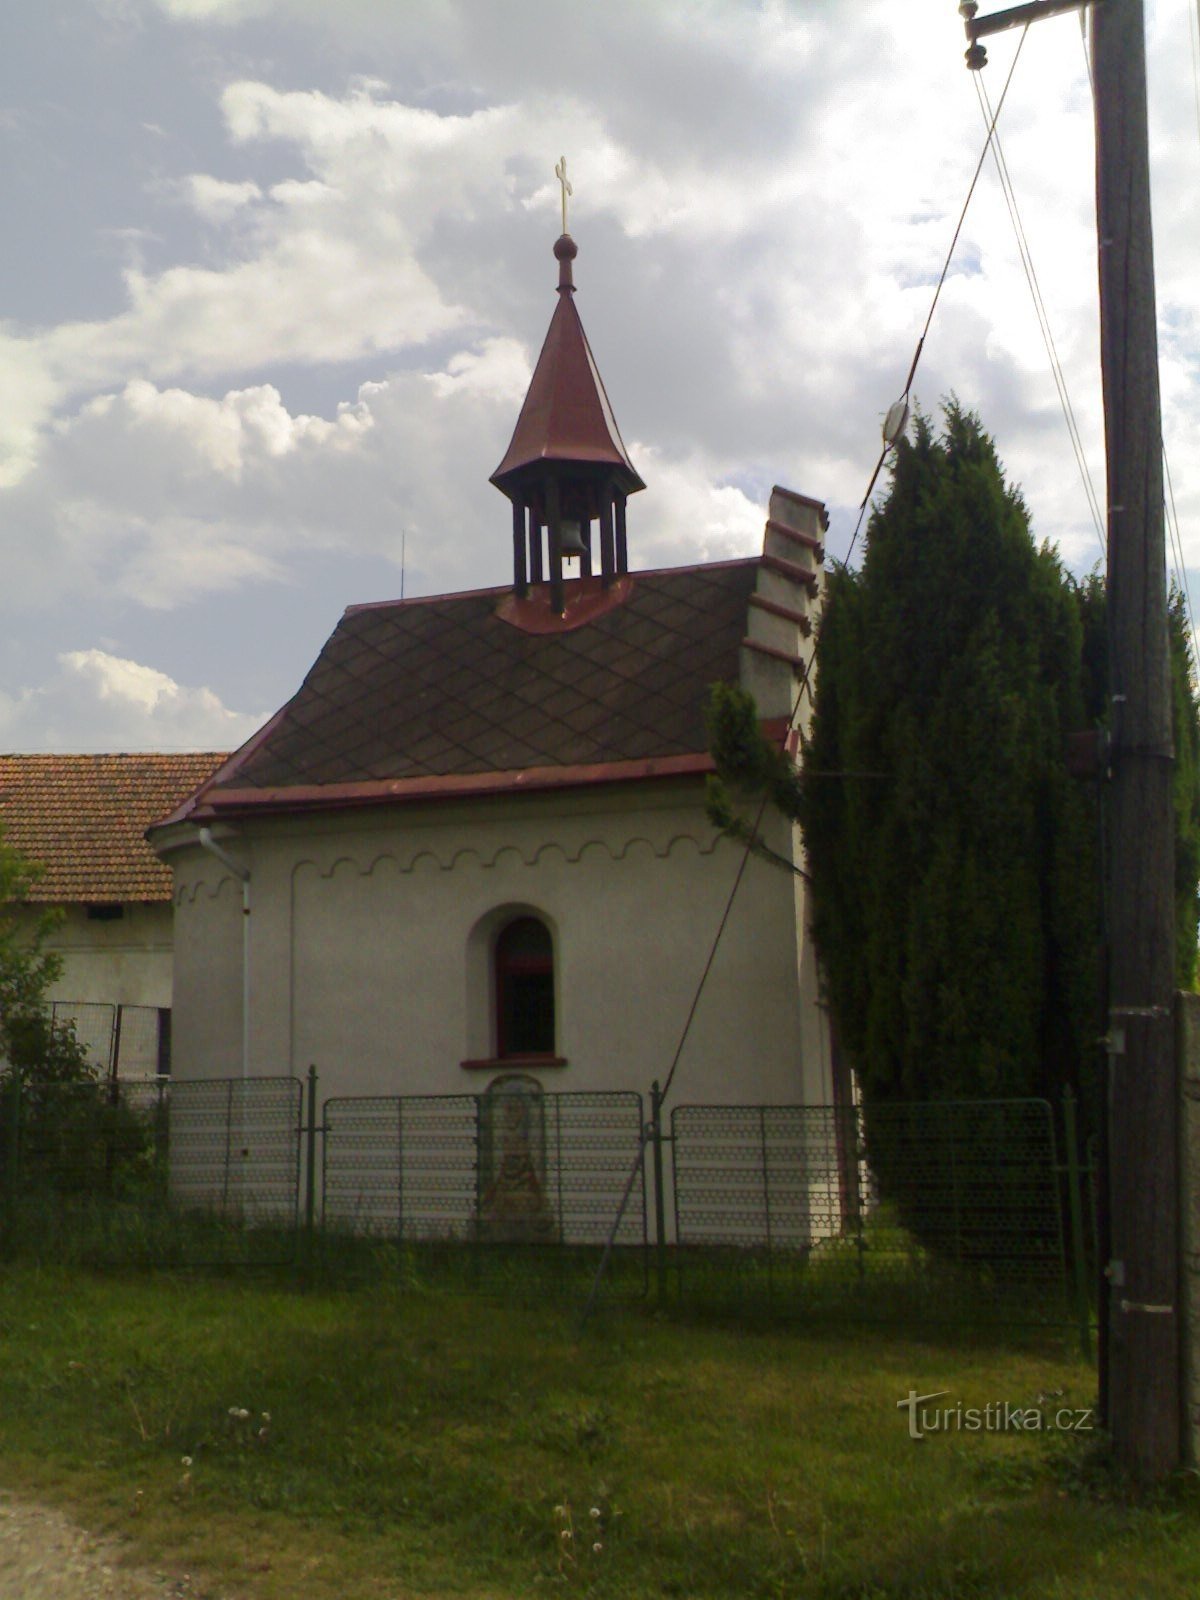 Rašovice - chapel